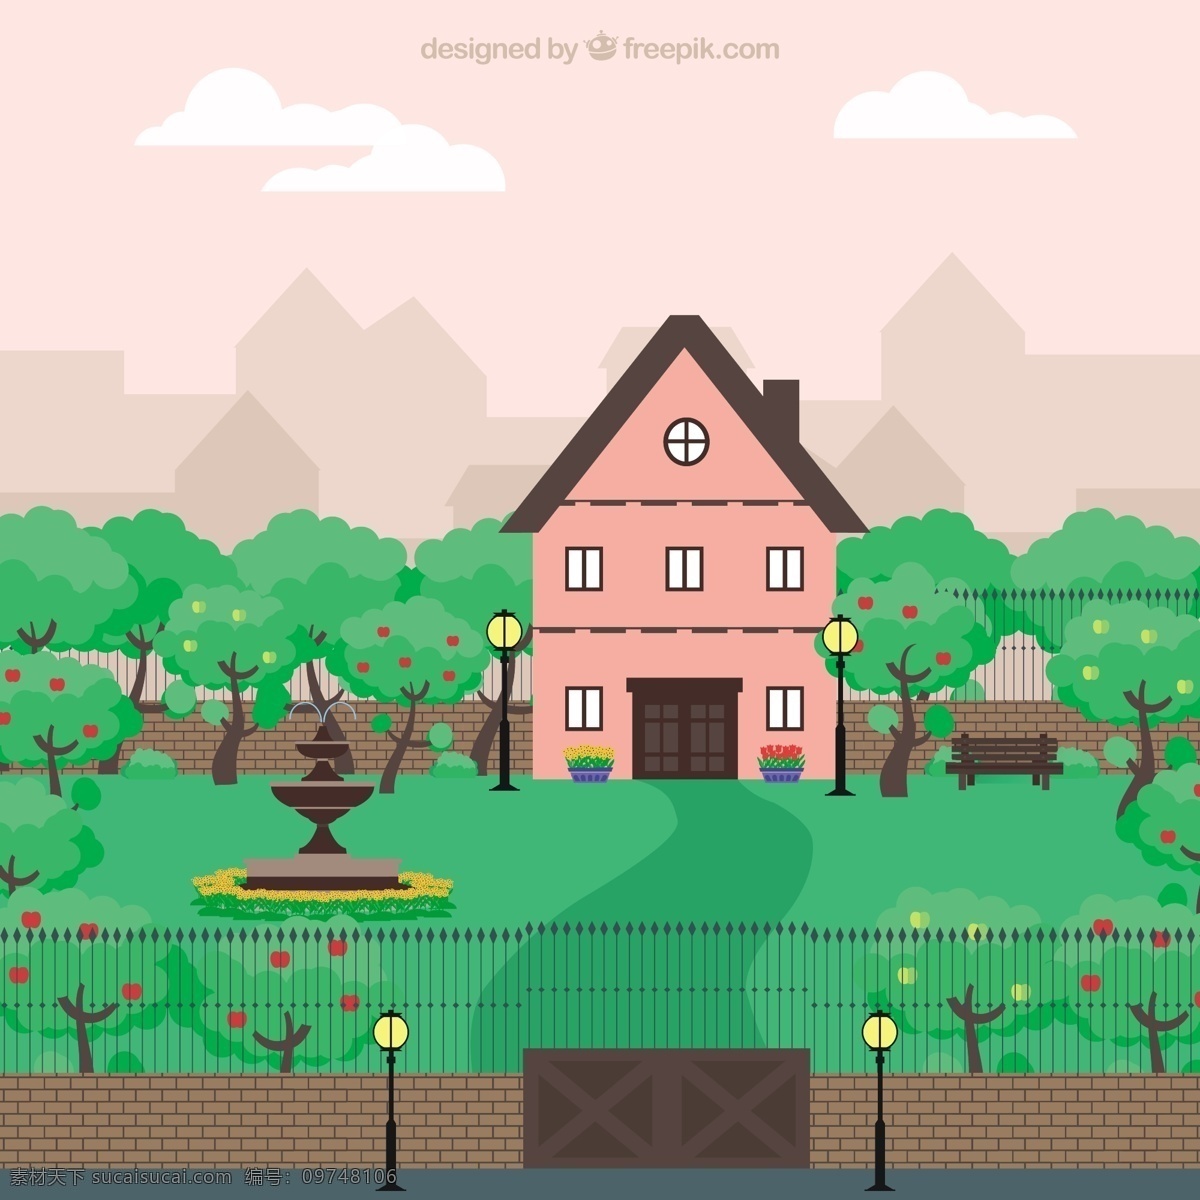 可爱 粉红色 房子 自然 绿色 景观 地势平坦 蔬菜 花园 树木 平整 植物 围栏 园艺 成长 喷泉 灯柱 白色